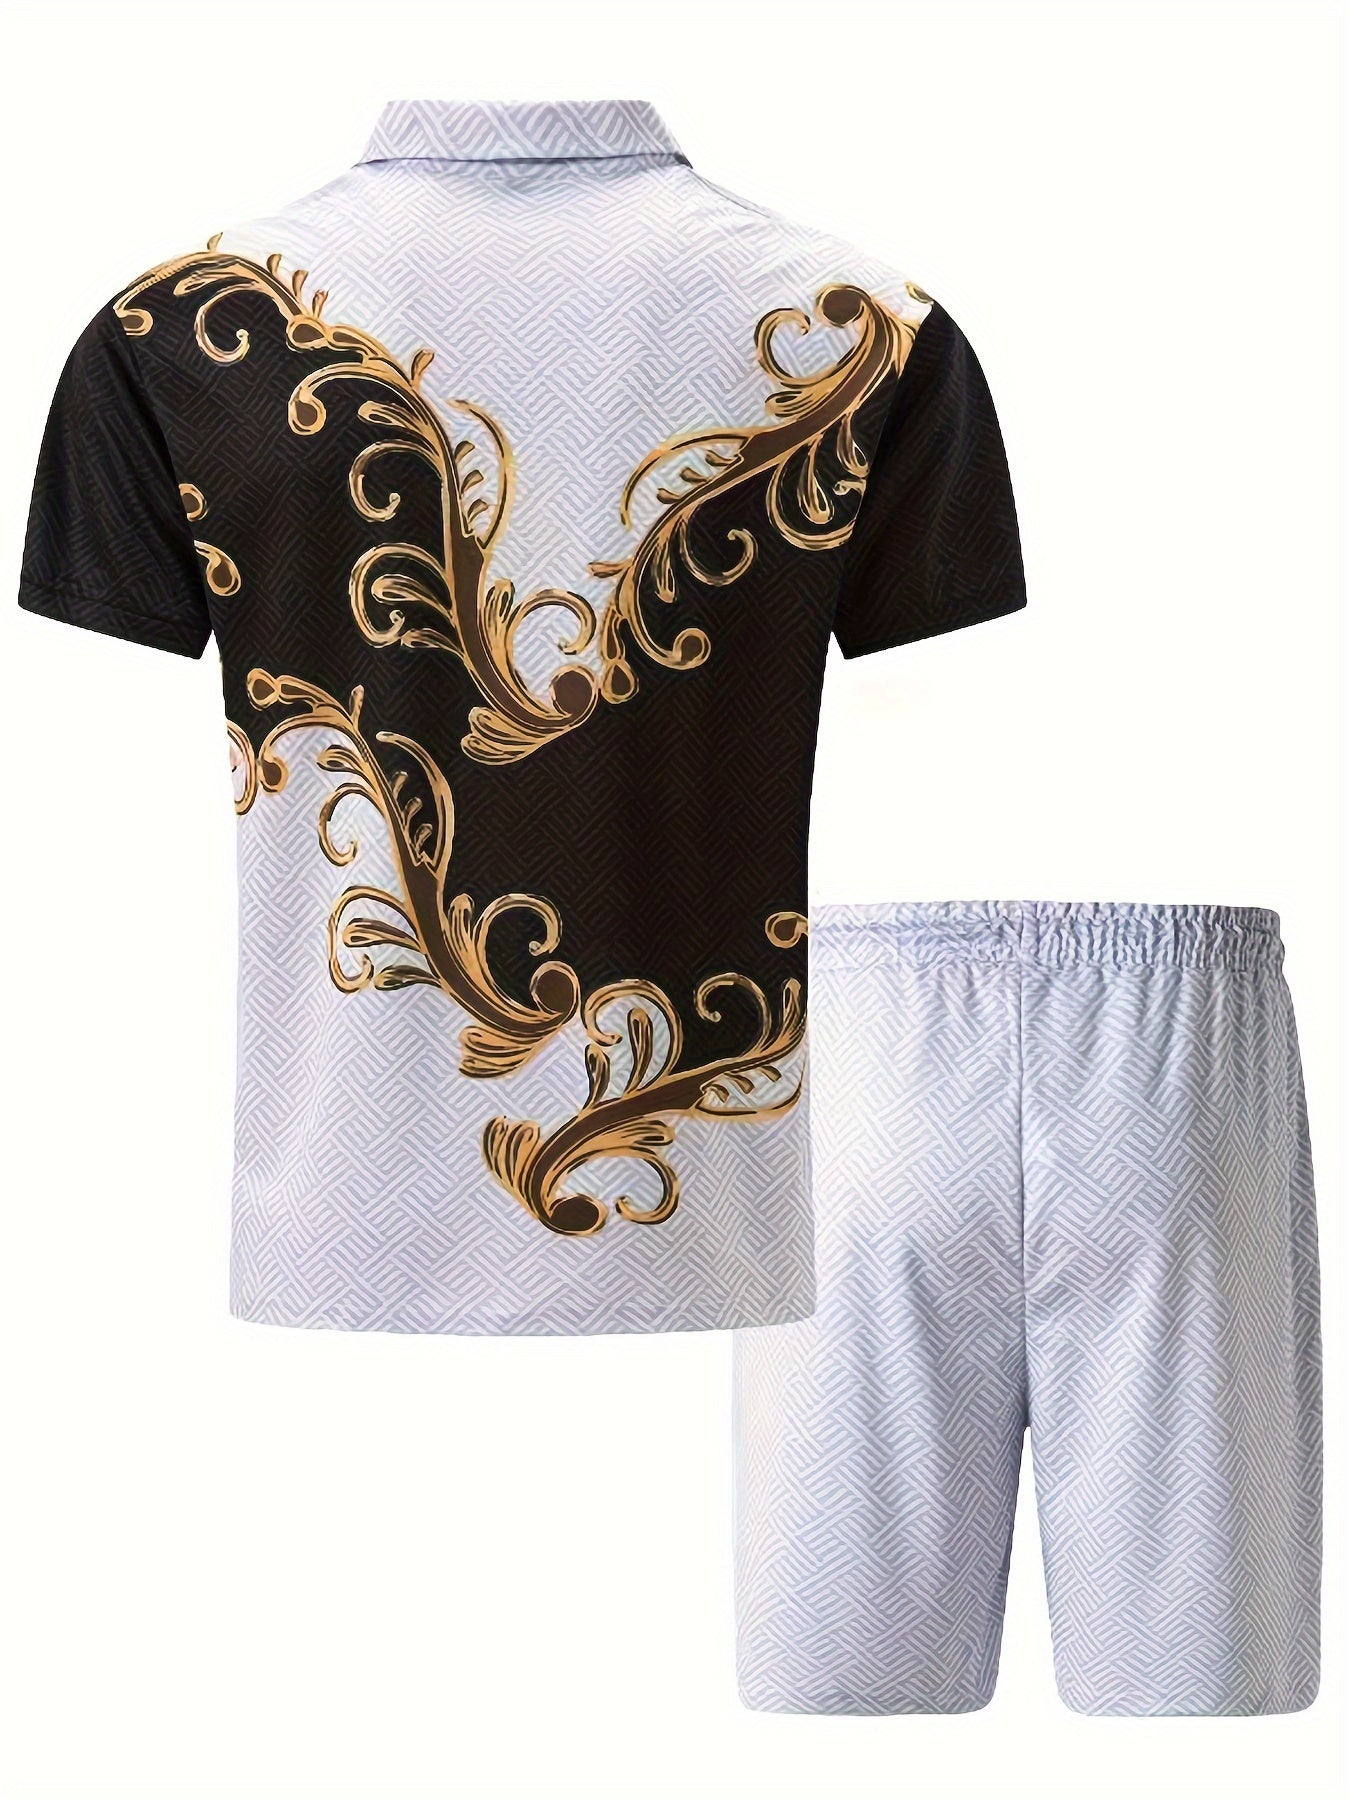 Exquisite Pattern, Herren 2-teilige Outfits, Lässiges Bequemes Reißverschluss-Shirt Und Drawstring-Lose Shorts